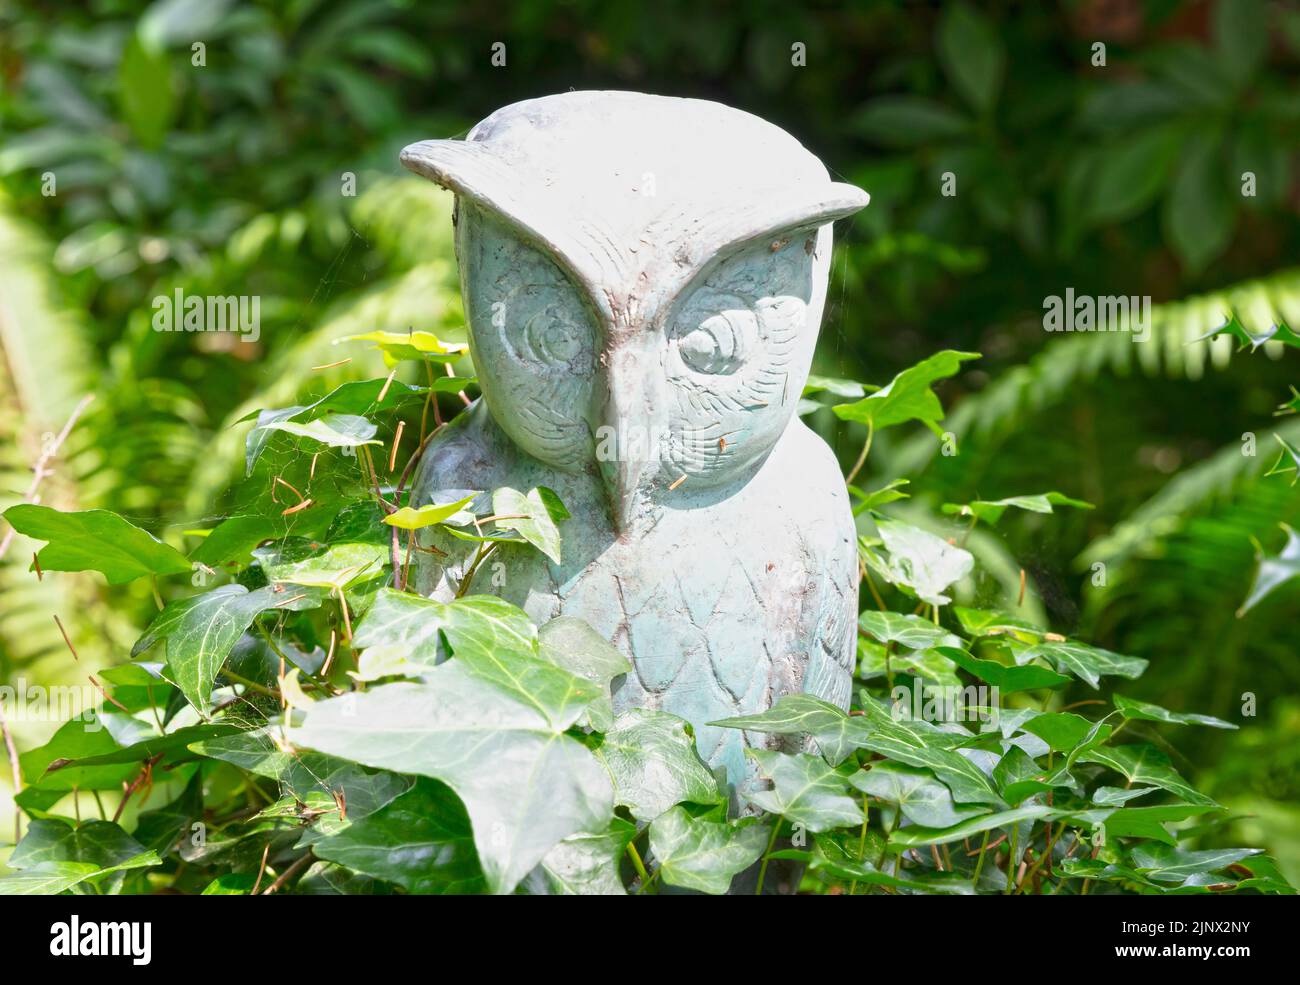 Estatua de búho de pie en la naturaleza verde, enfoque selectivo Foto de stock